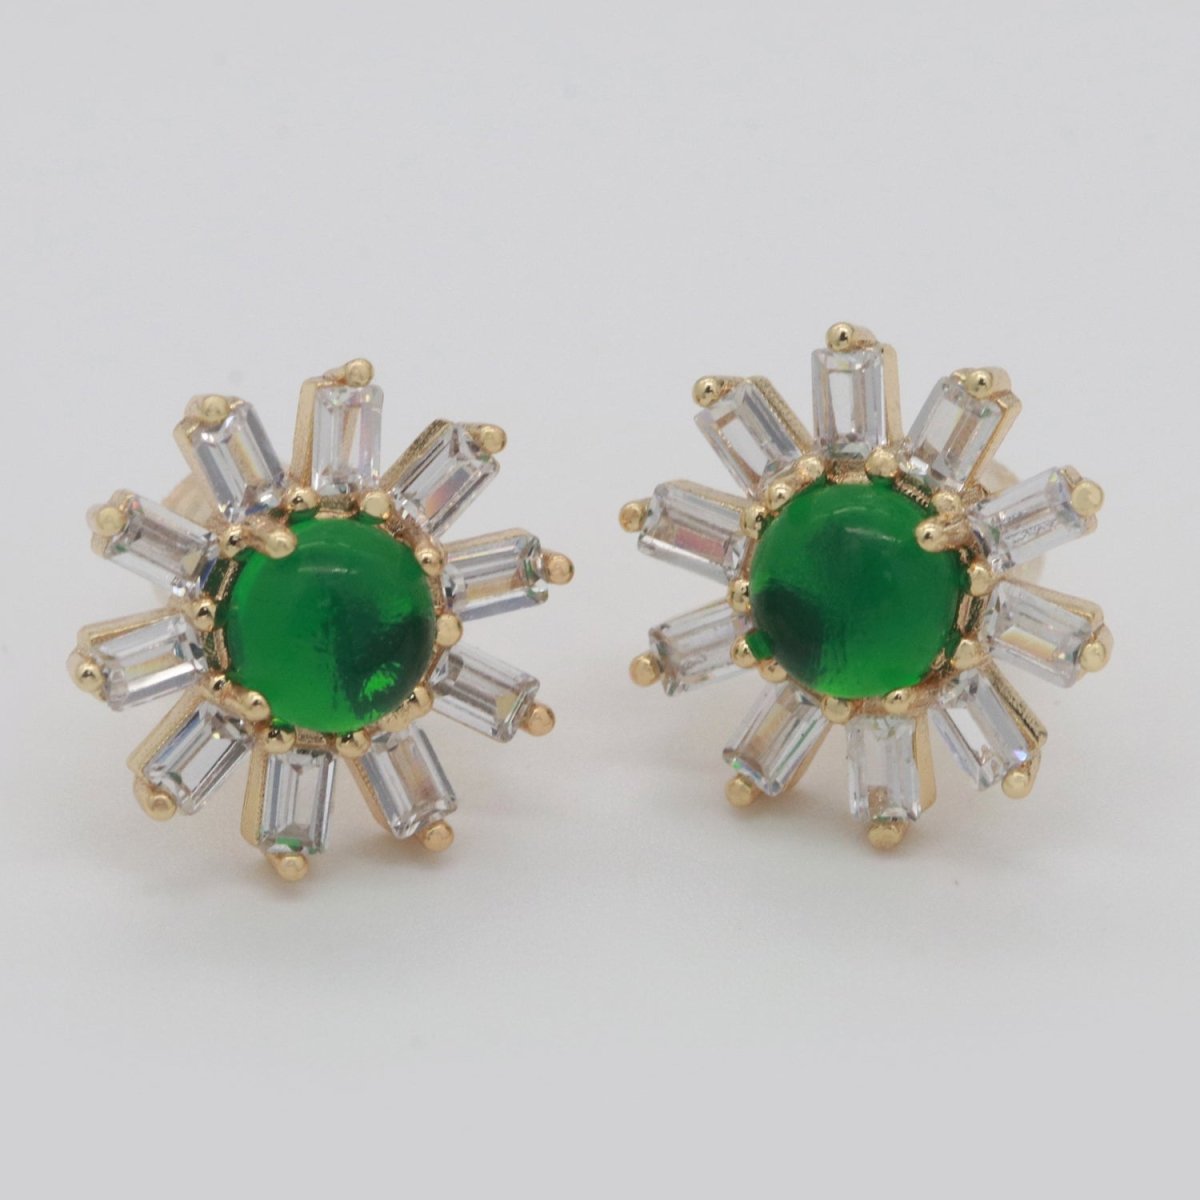 Clear Studs, Dainty Green Zirconia Earrings, Cz Stud Earrings, Sun Earrings, Tiny Diamond Stud Earrings, Small Gold Earring T-162 - DLUXCA